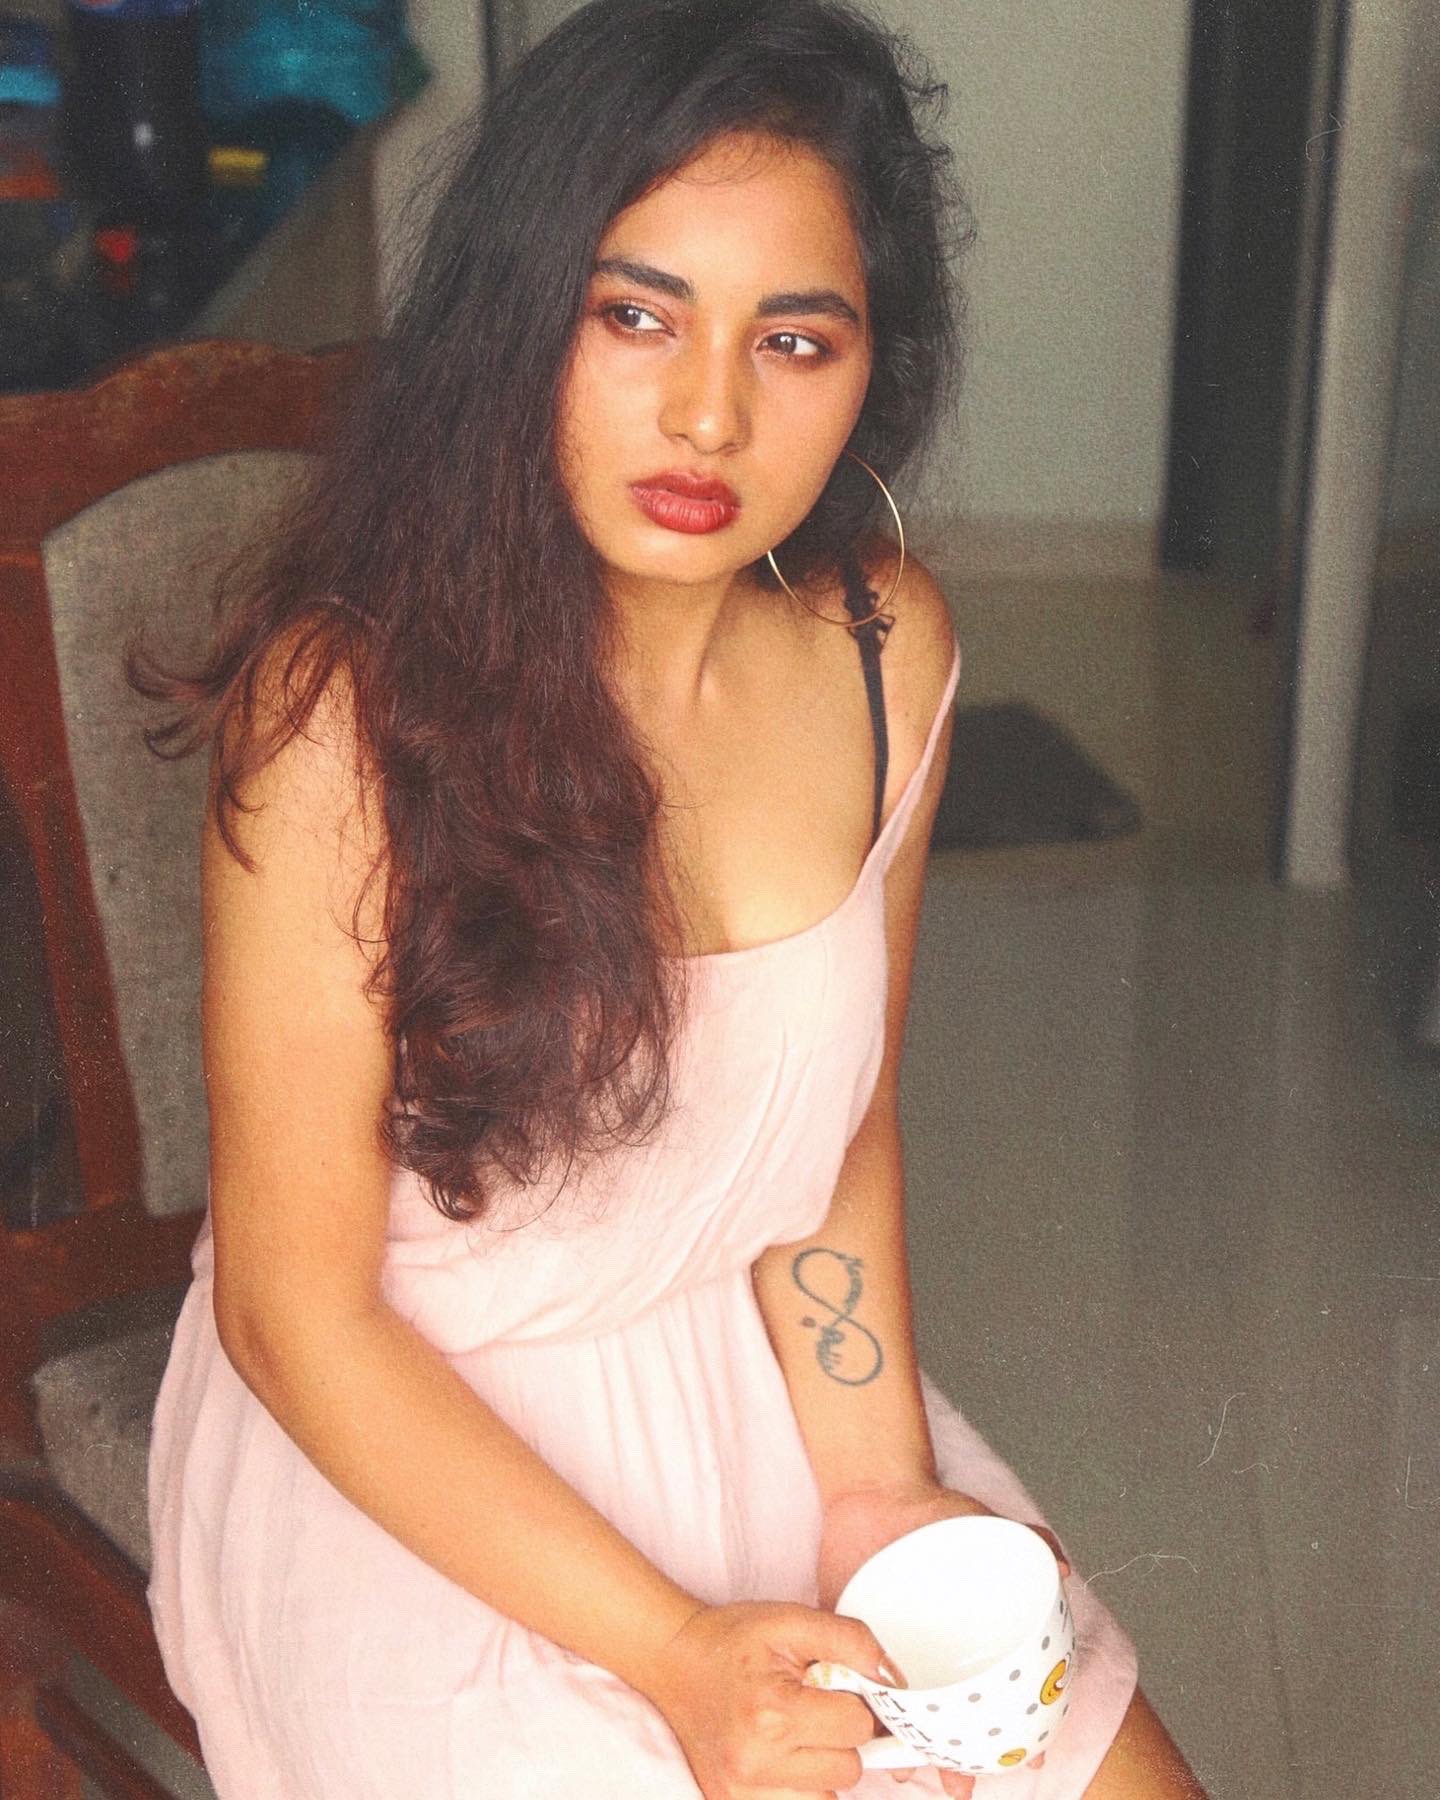 Srushti dange hot pink slip photoshoot getting viral